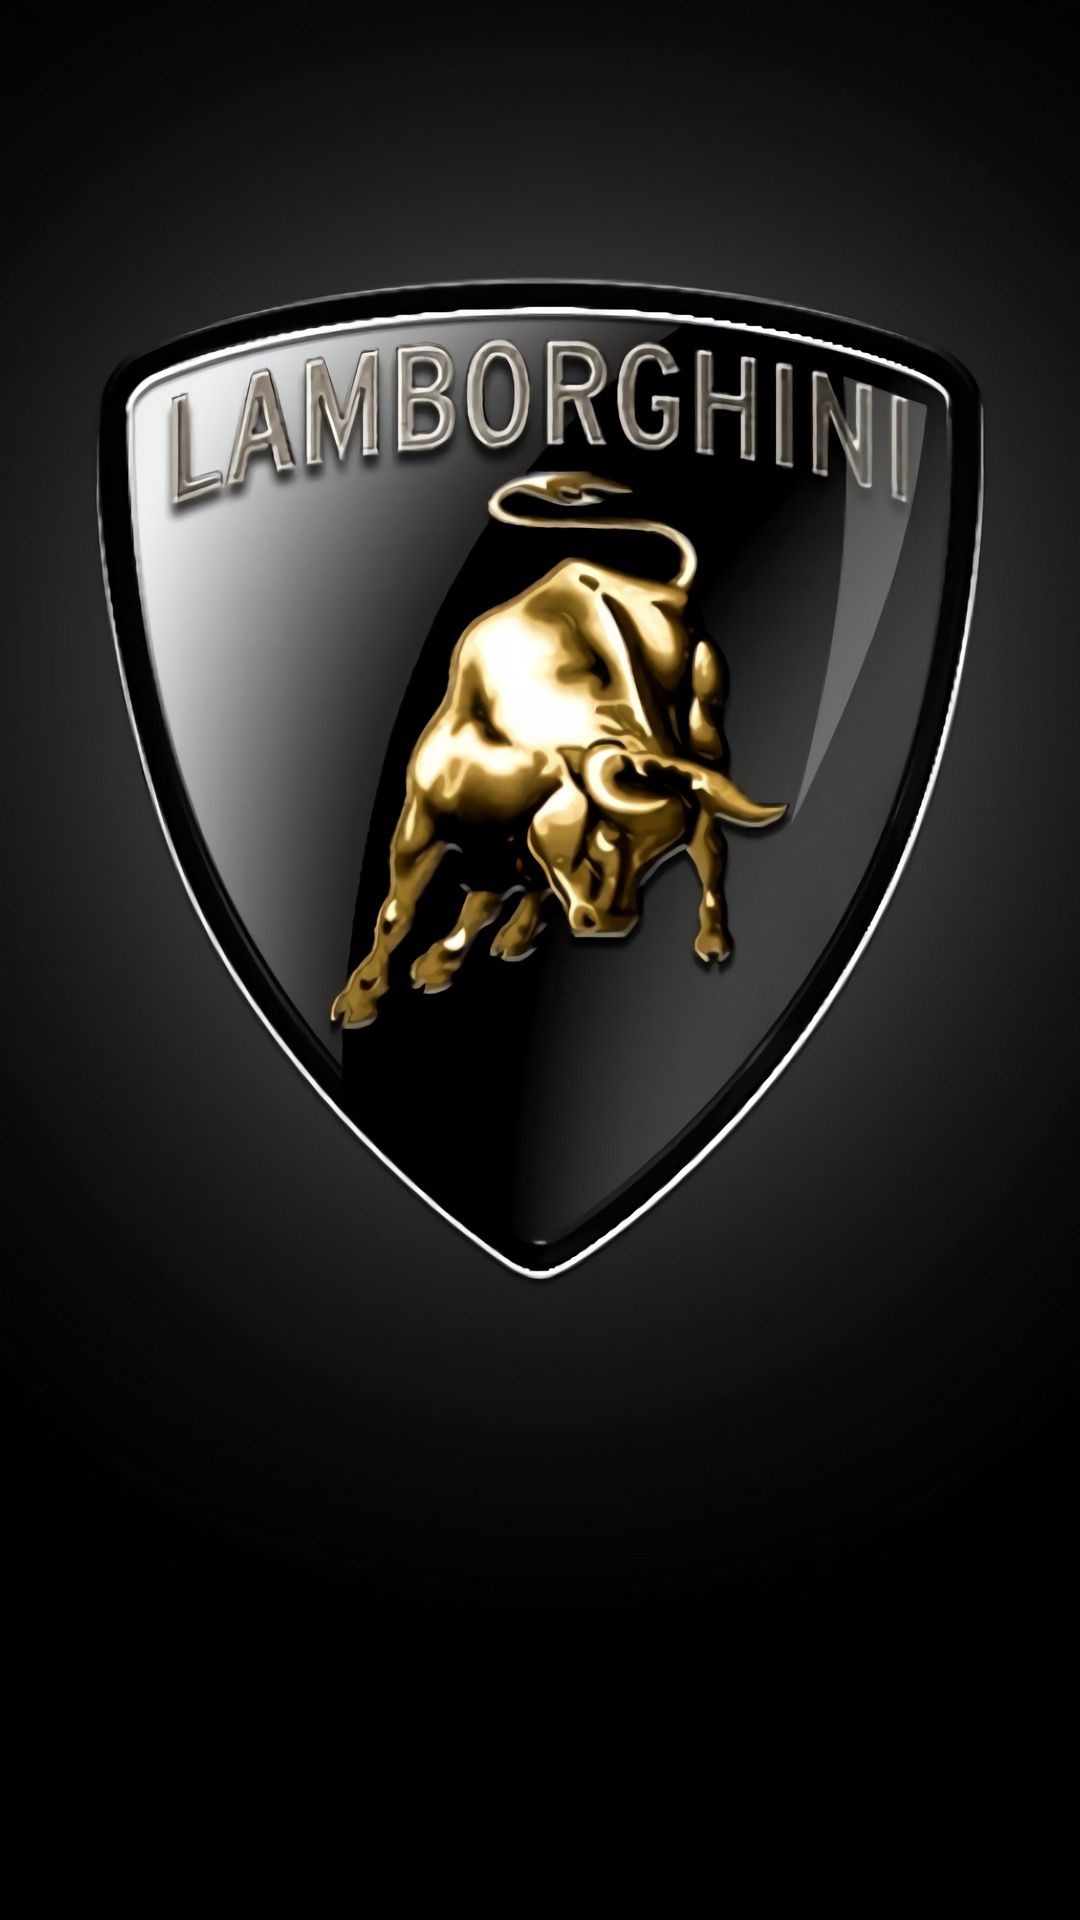 Lamborghini Logo, Car logos, Luxury car logos, Ercan Ahin, 1080x1920 Full HD Phone